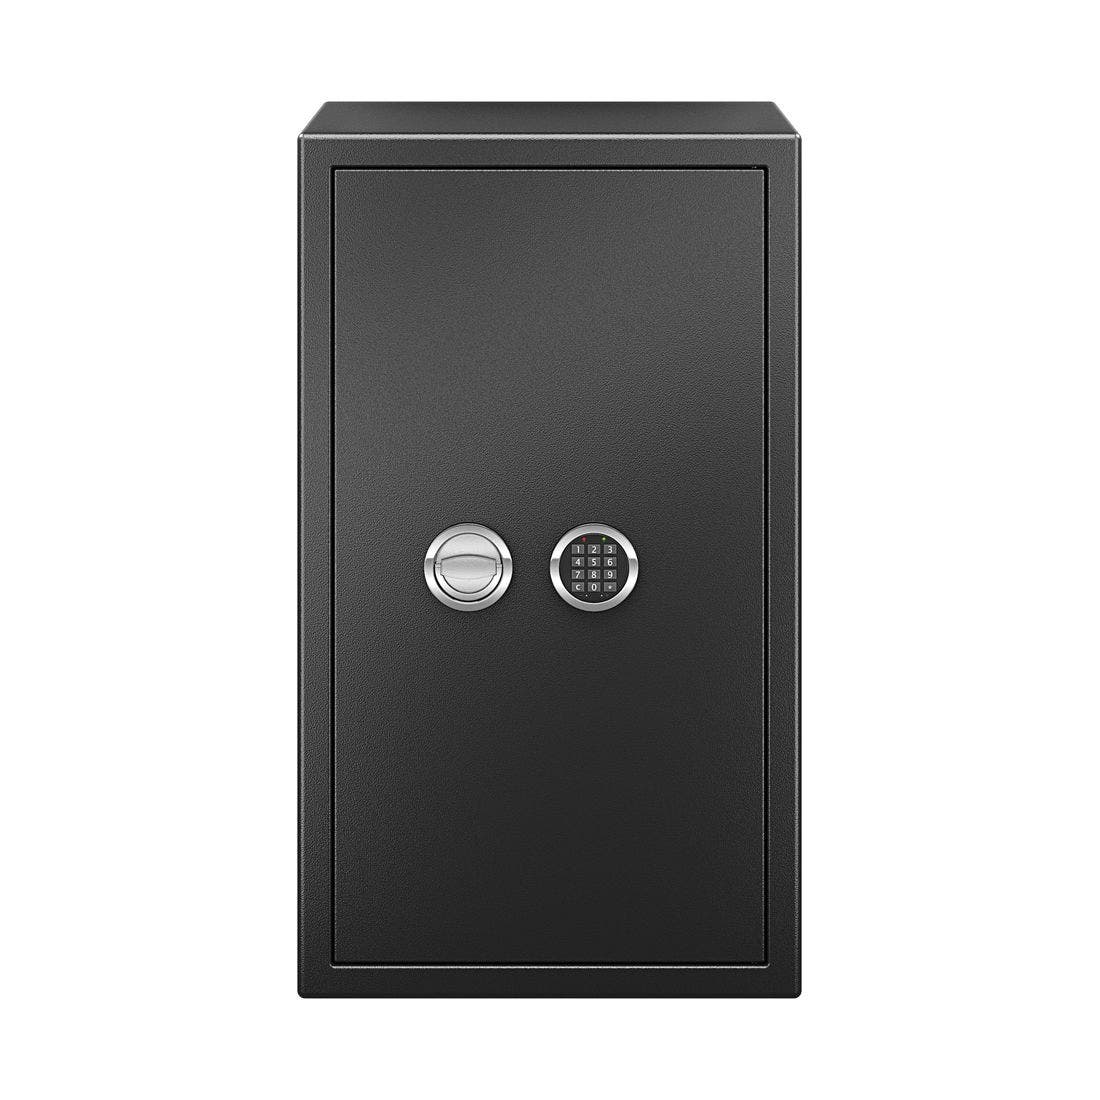 อุปกรณ์รักษาความปลอดภัยภายในบ้าน ตู้เซฟ สีสีดำ-SB Design Square